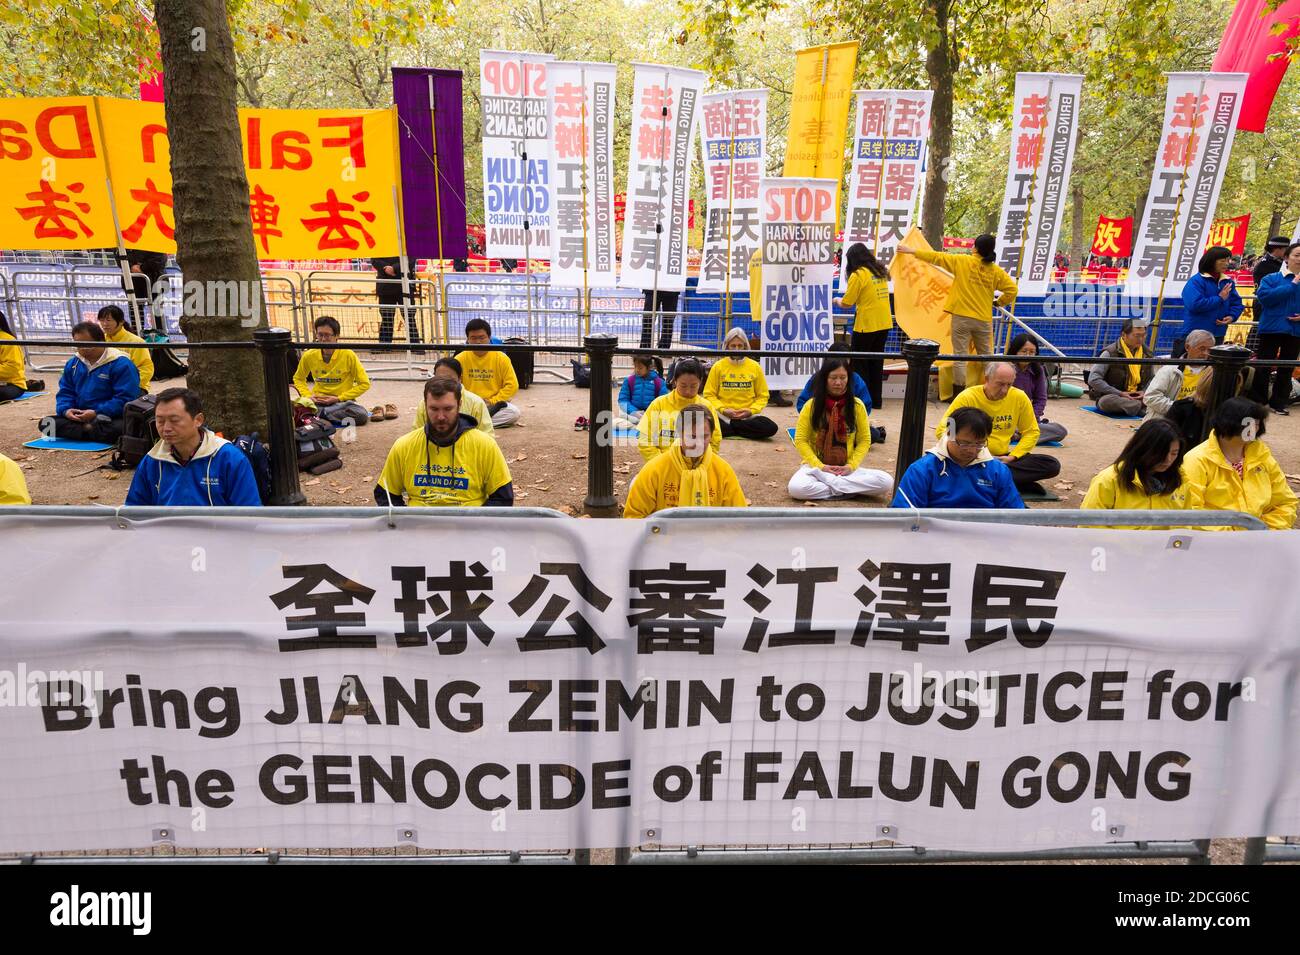 Menschenrechtsprotestierung von Falun Gong zur Hervorhebung der Menschenrechtsprobleme Chinas am ersten Tag des Staatsbesuchs des chinesischen Präsidenten Xi Jinping in Großbritannien. The Mall, Saint Jame's Park, Westminster, London, Großbritannien. 20. Oktober 2015 Stockfoto